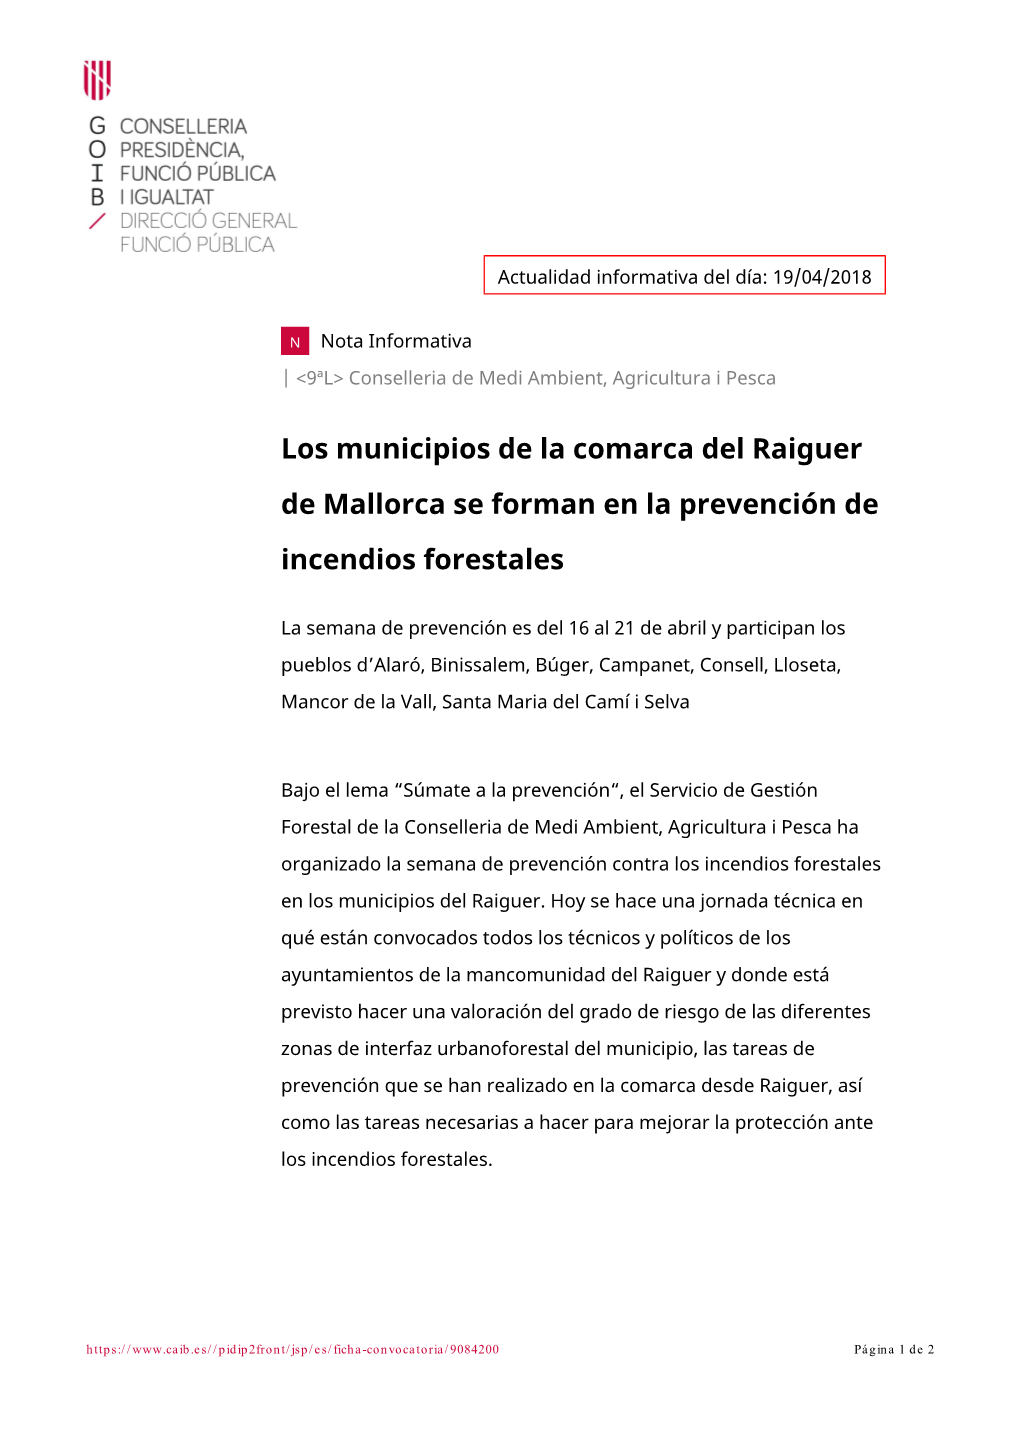 Los Municipios De La Comarca Del Raiguer De Mallorca Se Forman En La Prevención De Incendios Forestales